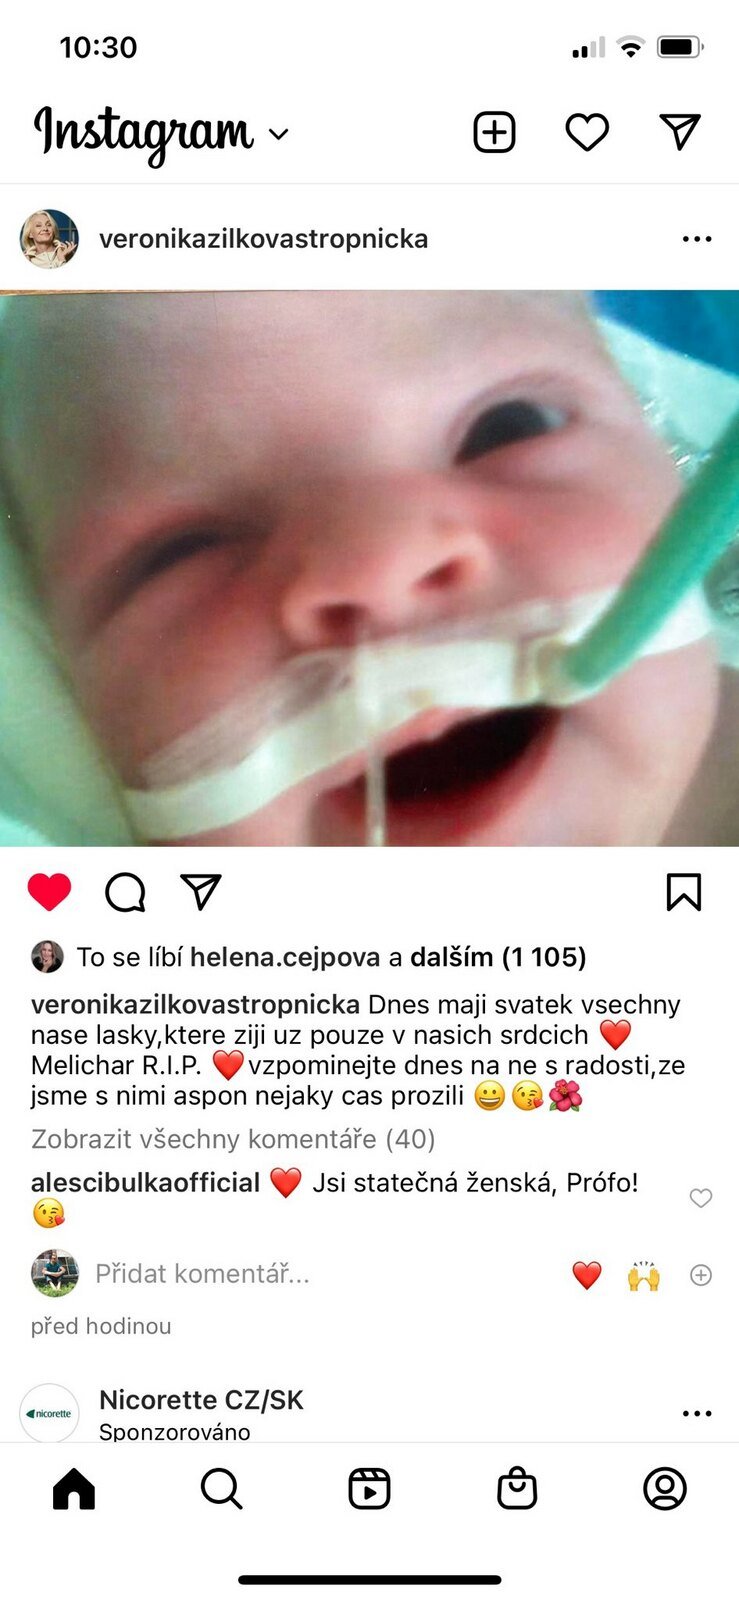 Veronika Žilková zveřejnila snímek svého synka Melichara, který zemřel v 8 měsících.